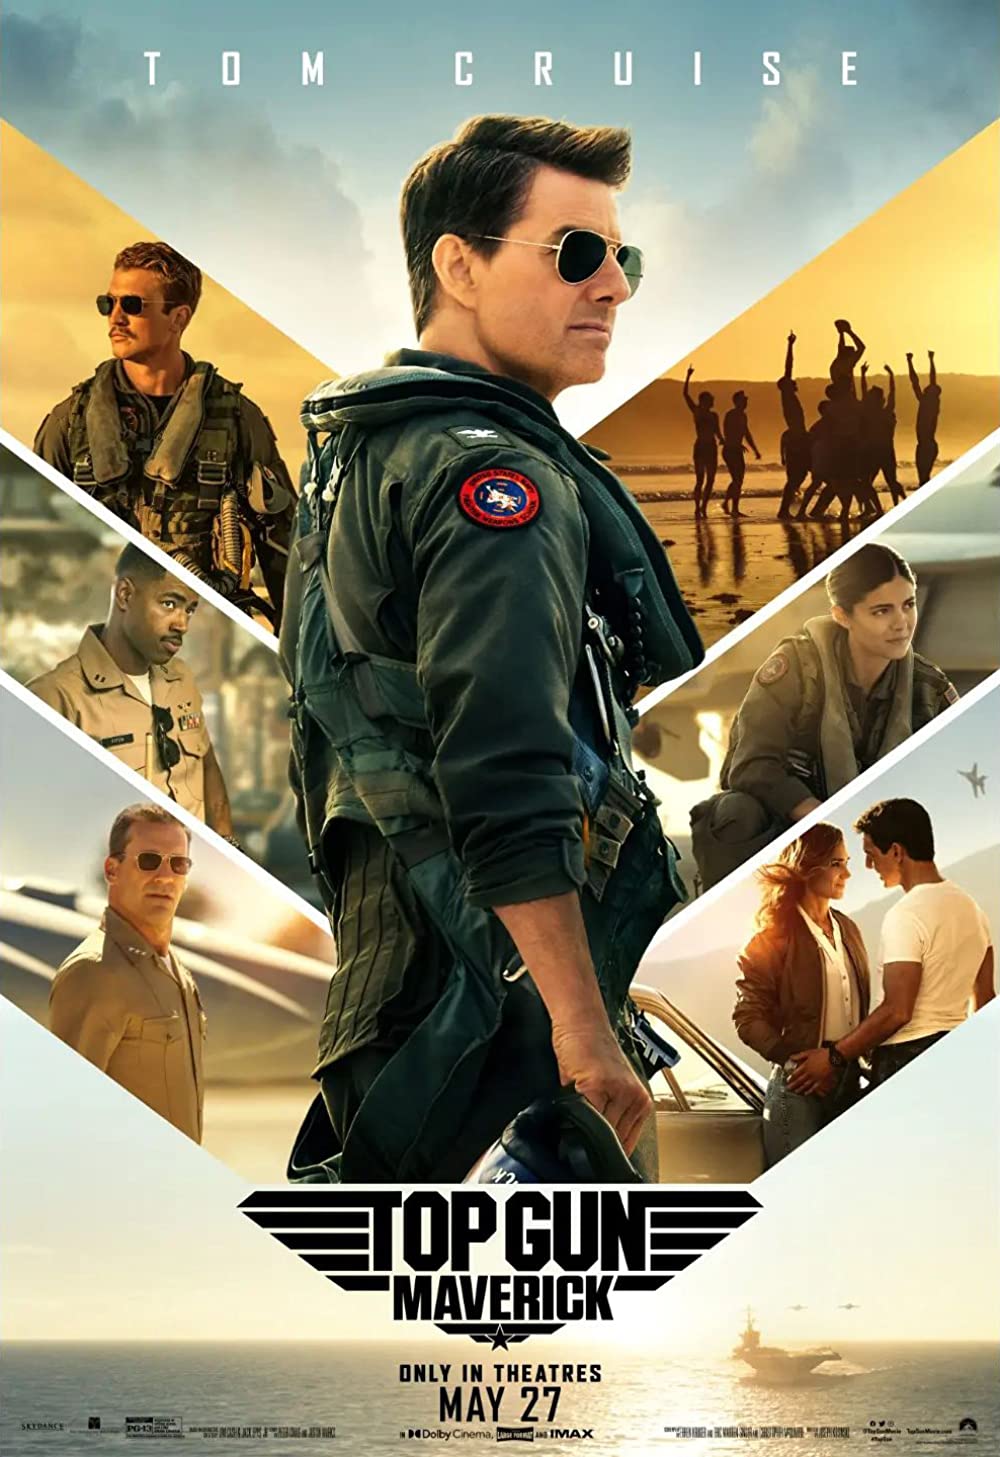 ดูหนังออนไลน์ หนังใหม่ล่าสุด Top Gun: Maverick (2022) ท็อปกัน มาเวอริค